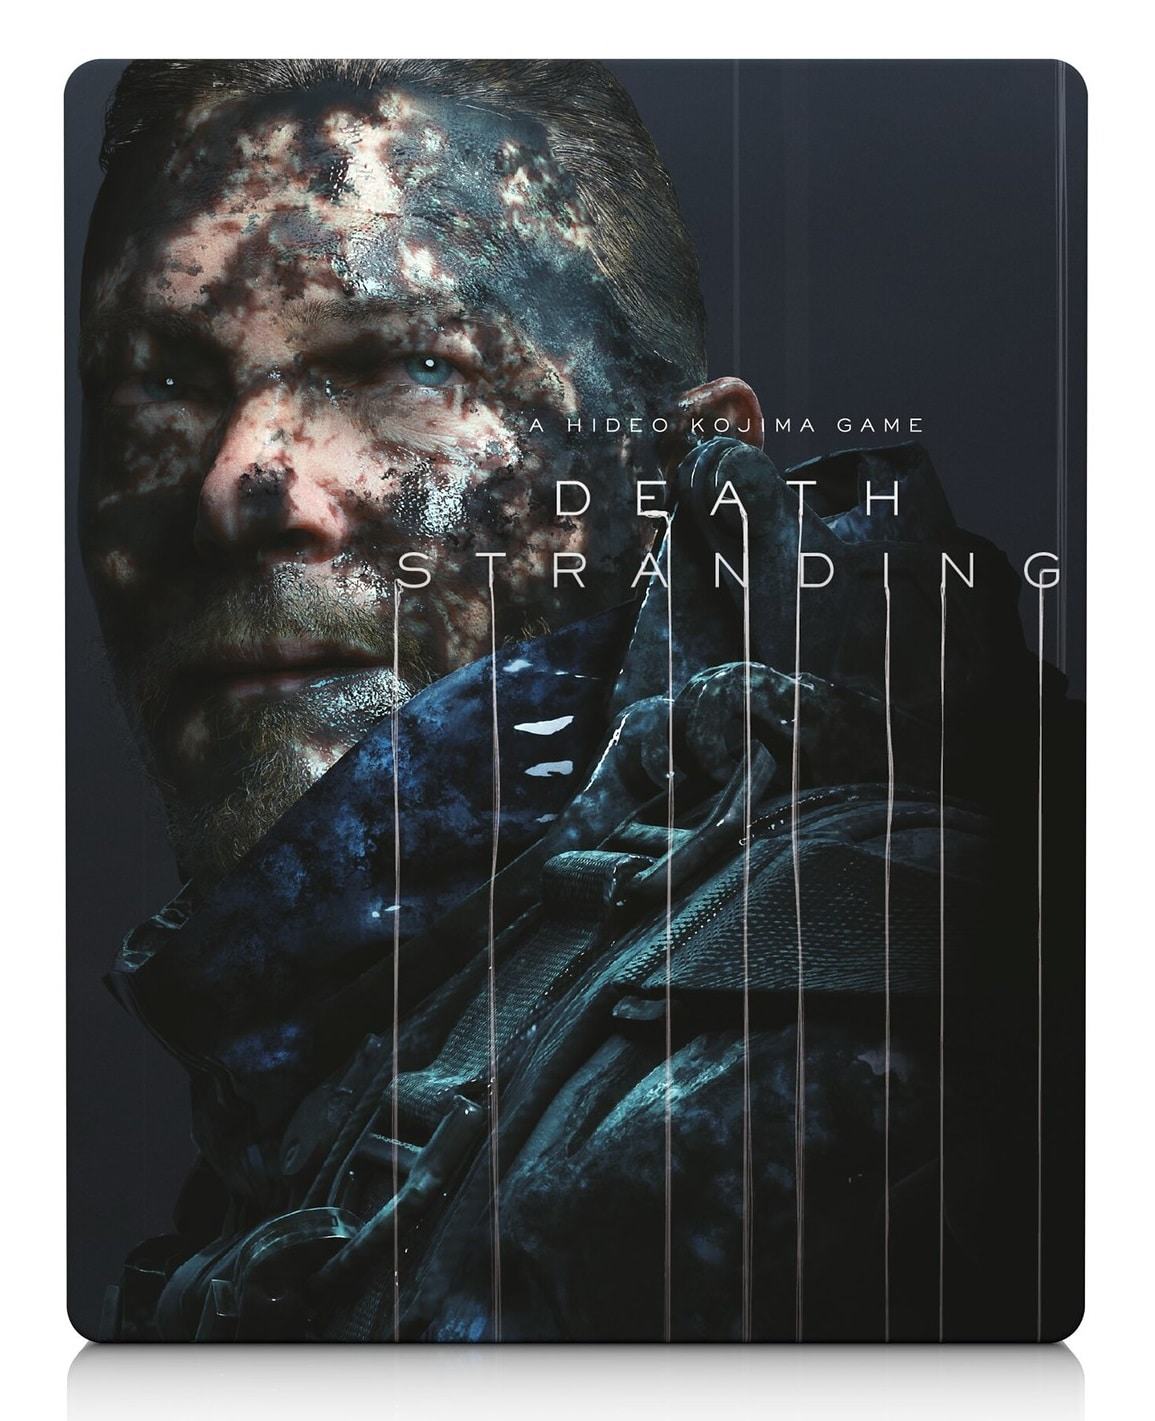 Hideo Kojima rivela le cover art di Death Stranding 2